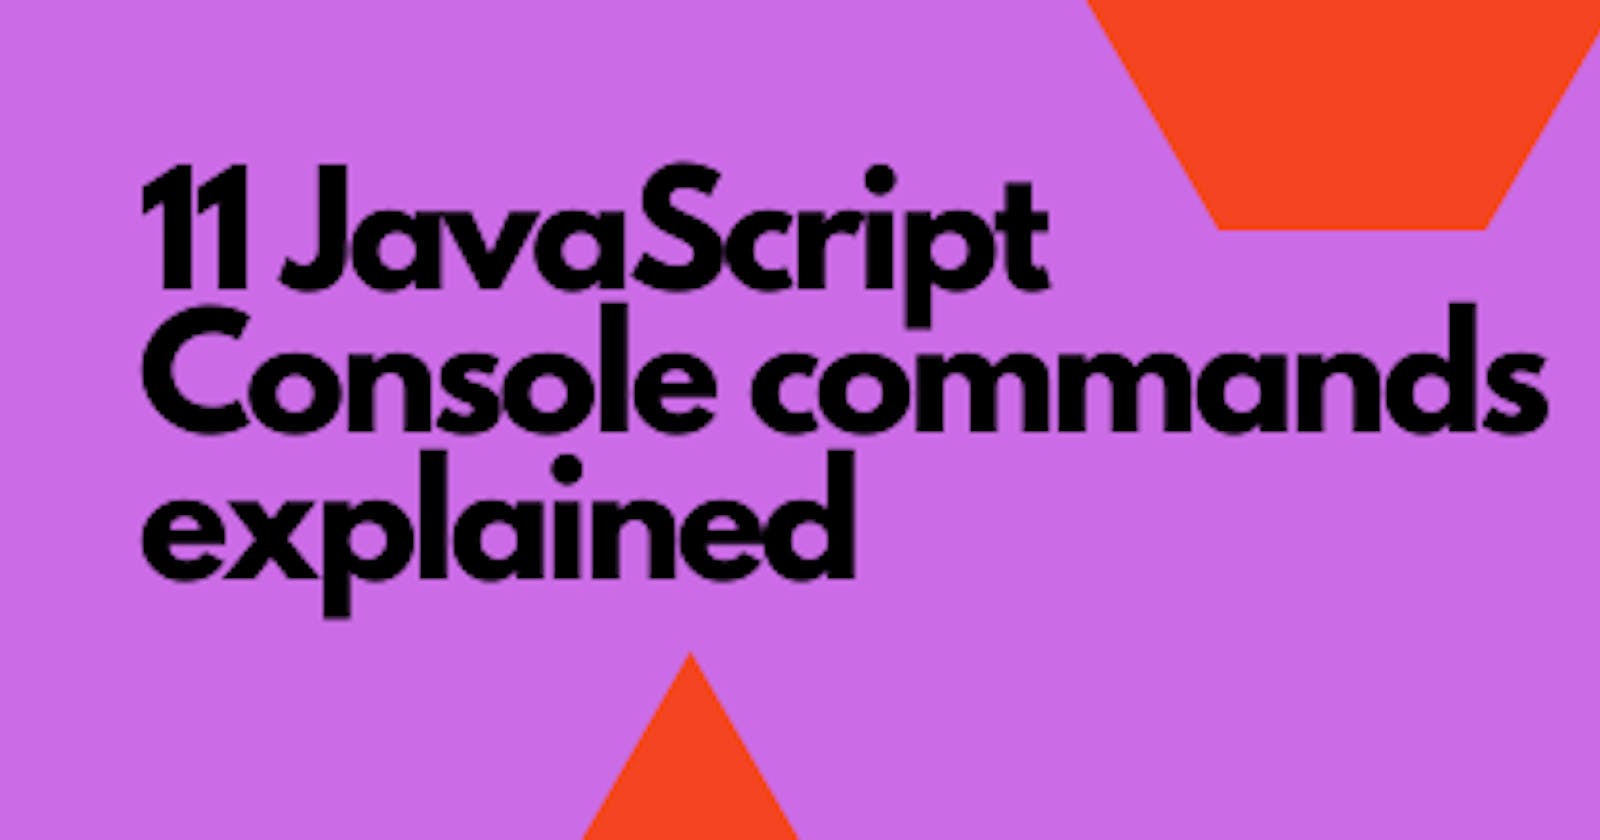 11 JavaScript Console Commands Explained